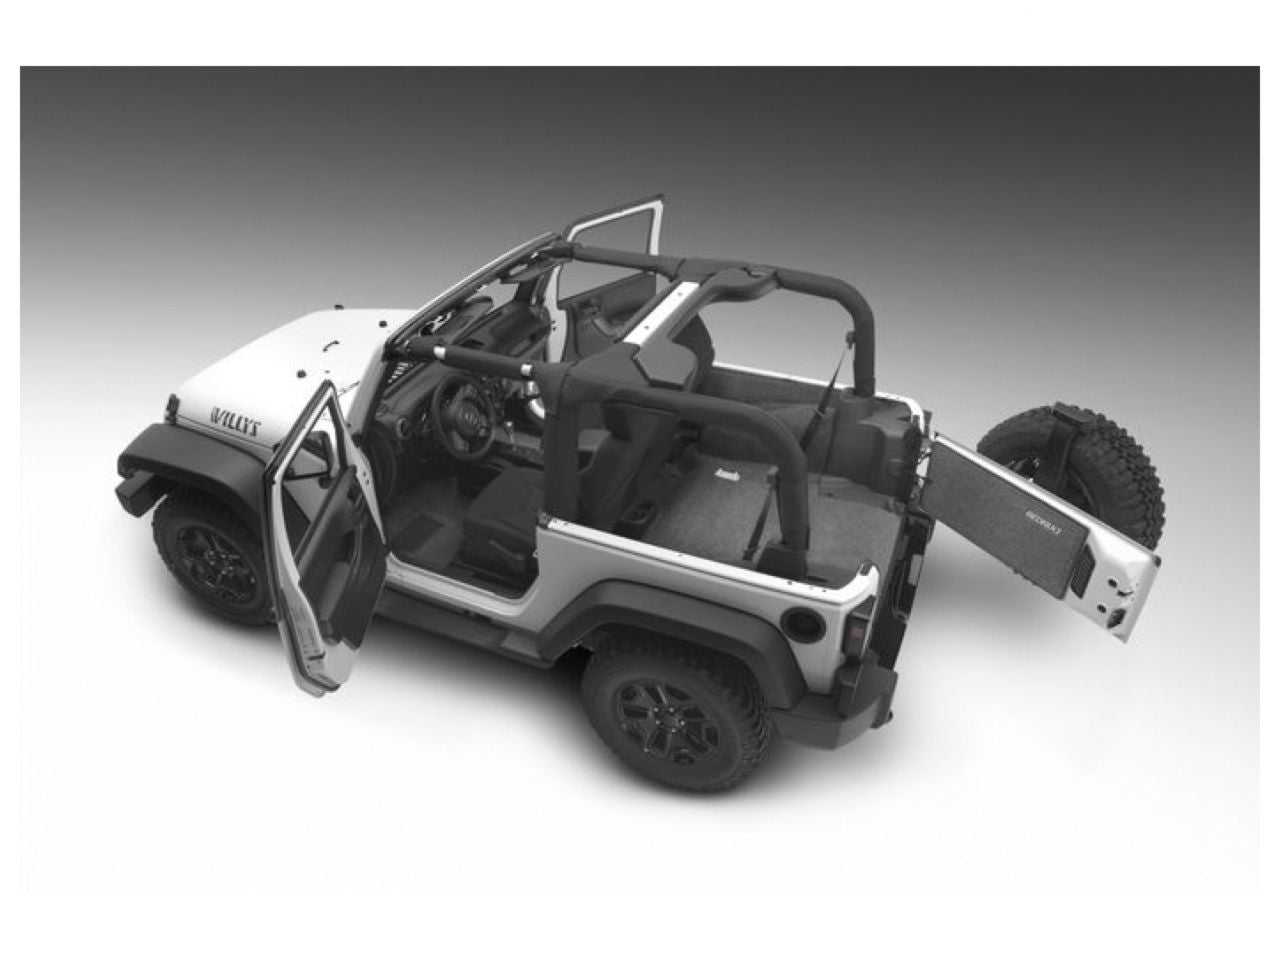 Bedrug 11+ Jeep JK 2 Door Rear 5PC Cargo Kit (Includes Tailgate & Tub Liner)